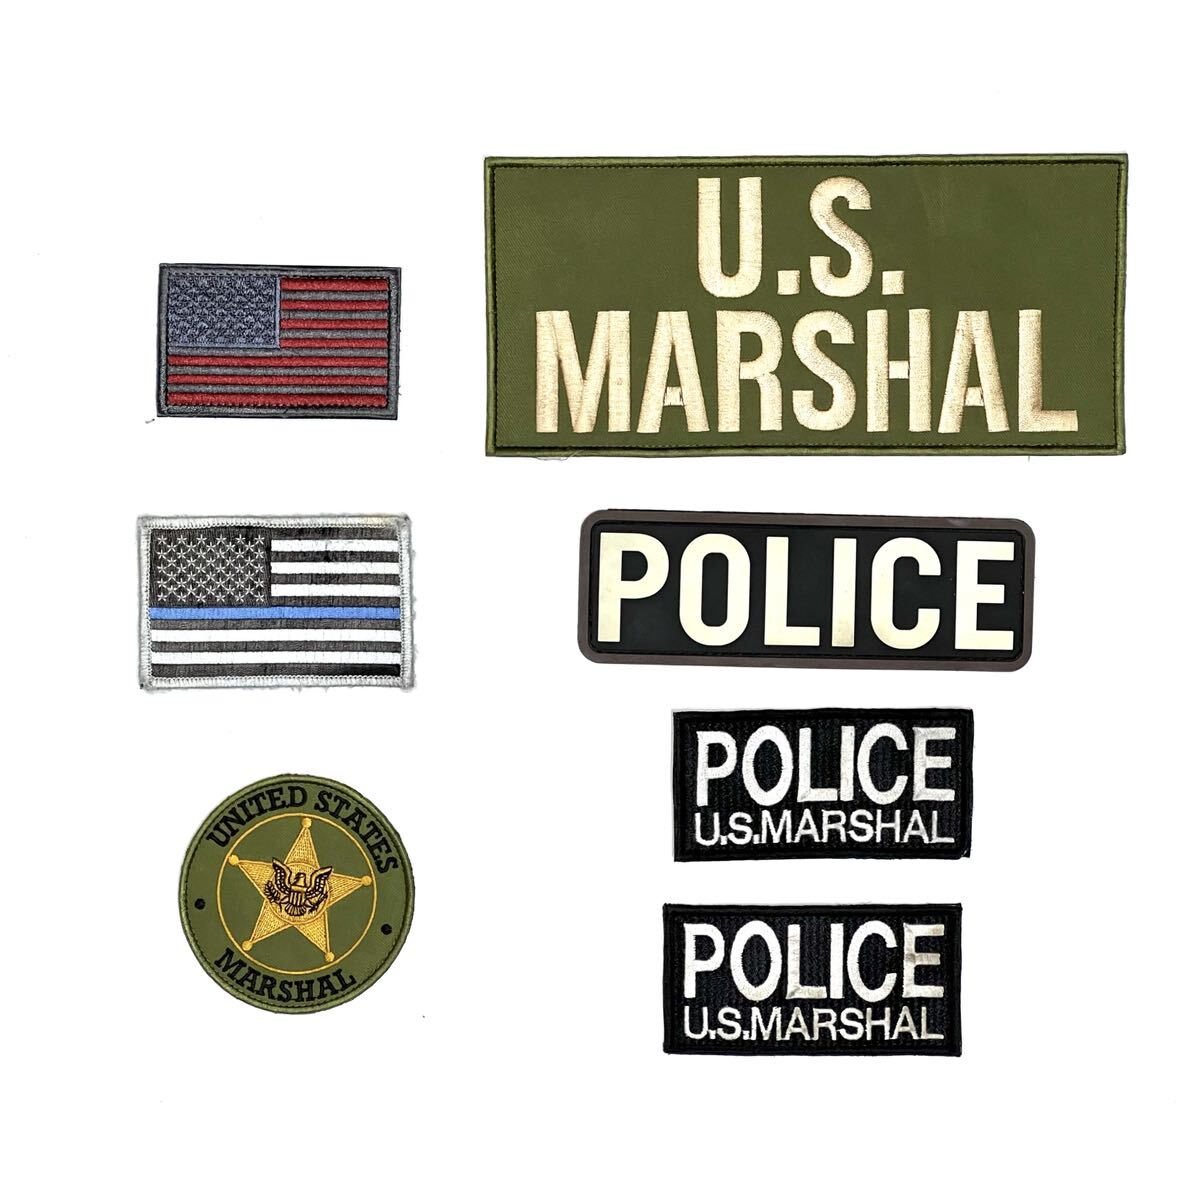 レプリカ品 US Marshals Service ベルクロパッチセット (検 連邦保安官局 USMS マーシャル LE POLICE SOG プレートキャリア ワッペンの画像1